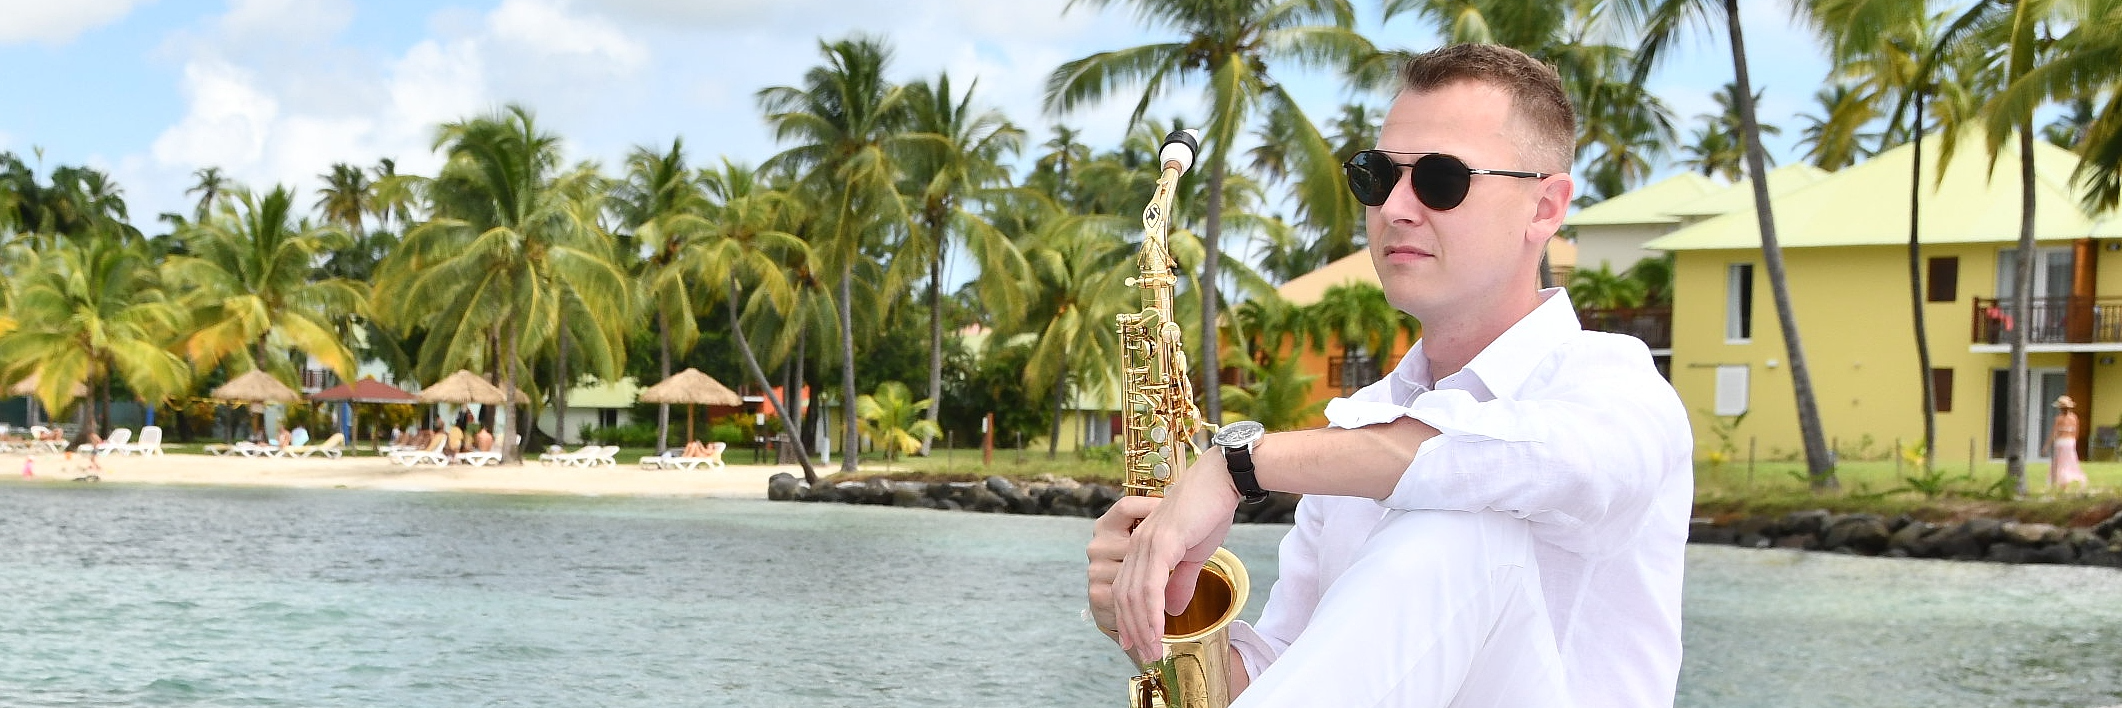 Jb'Sax, musicien Saxophoniste en représentation à Nord - photo de couverture n° 3